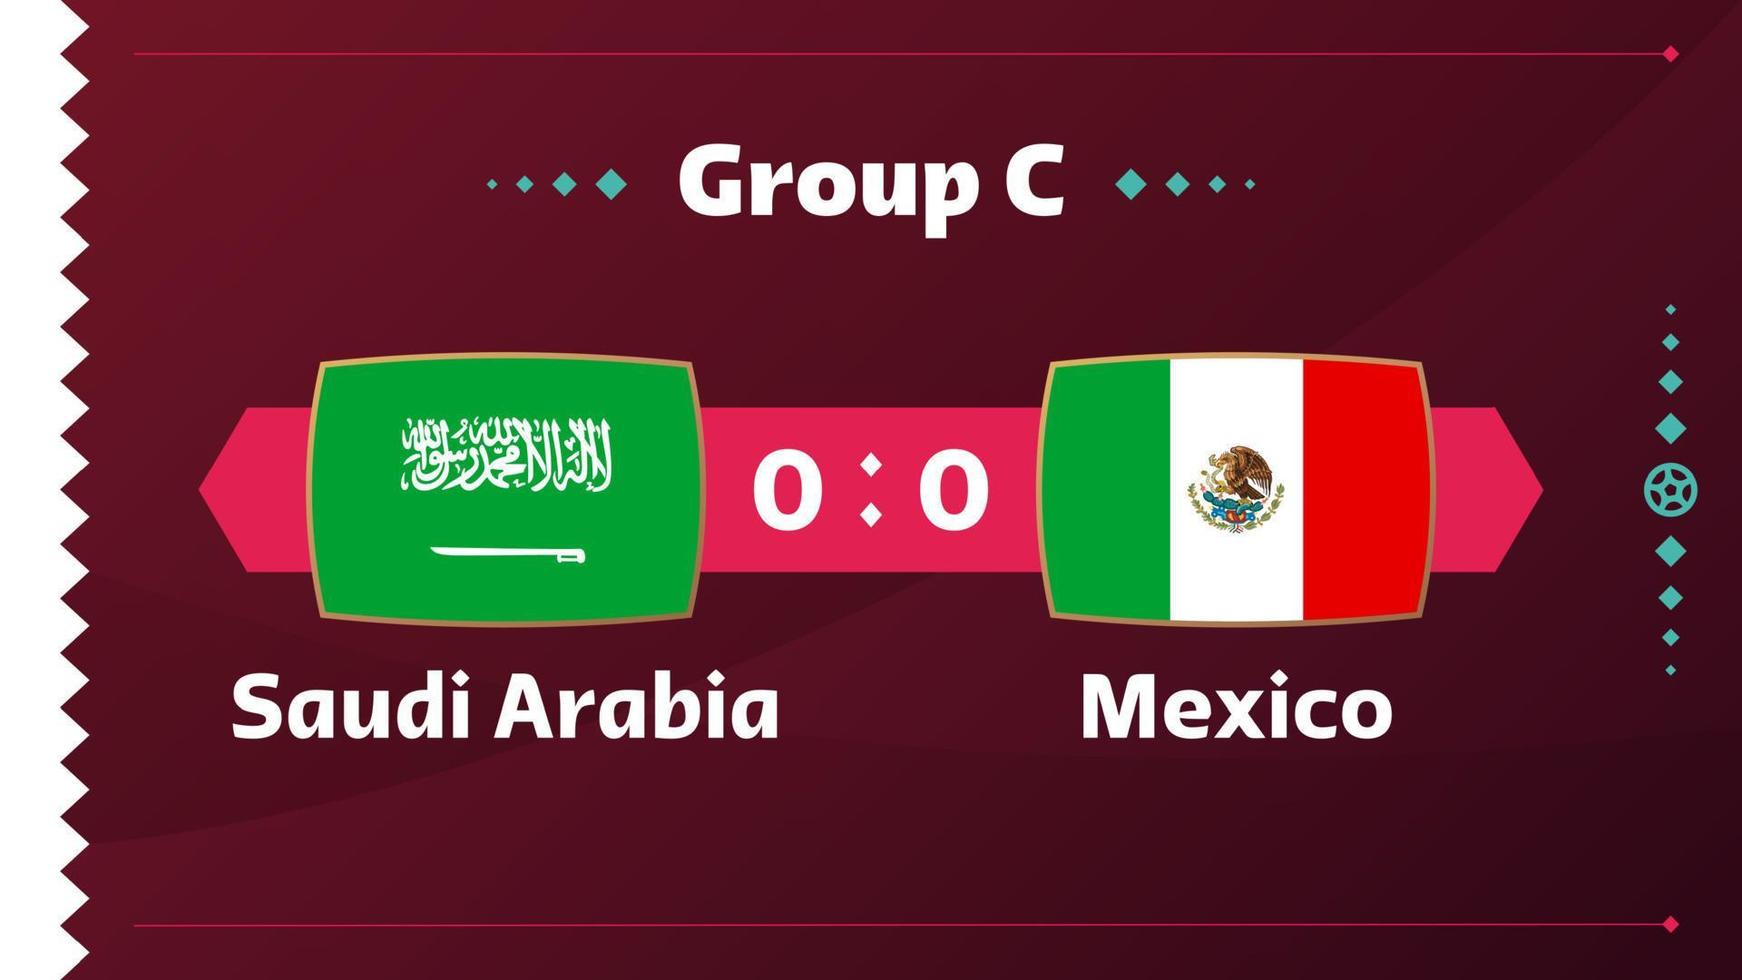 Arabia Saudita vs Messico, calcio 2022, gruppo c. partita di campionato mondiale di calcio contro squadre intro sfondo sportivo, poster finale della competizione di campionato, illustrazione vettoriale. vettore